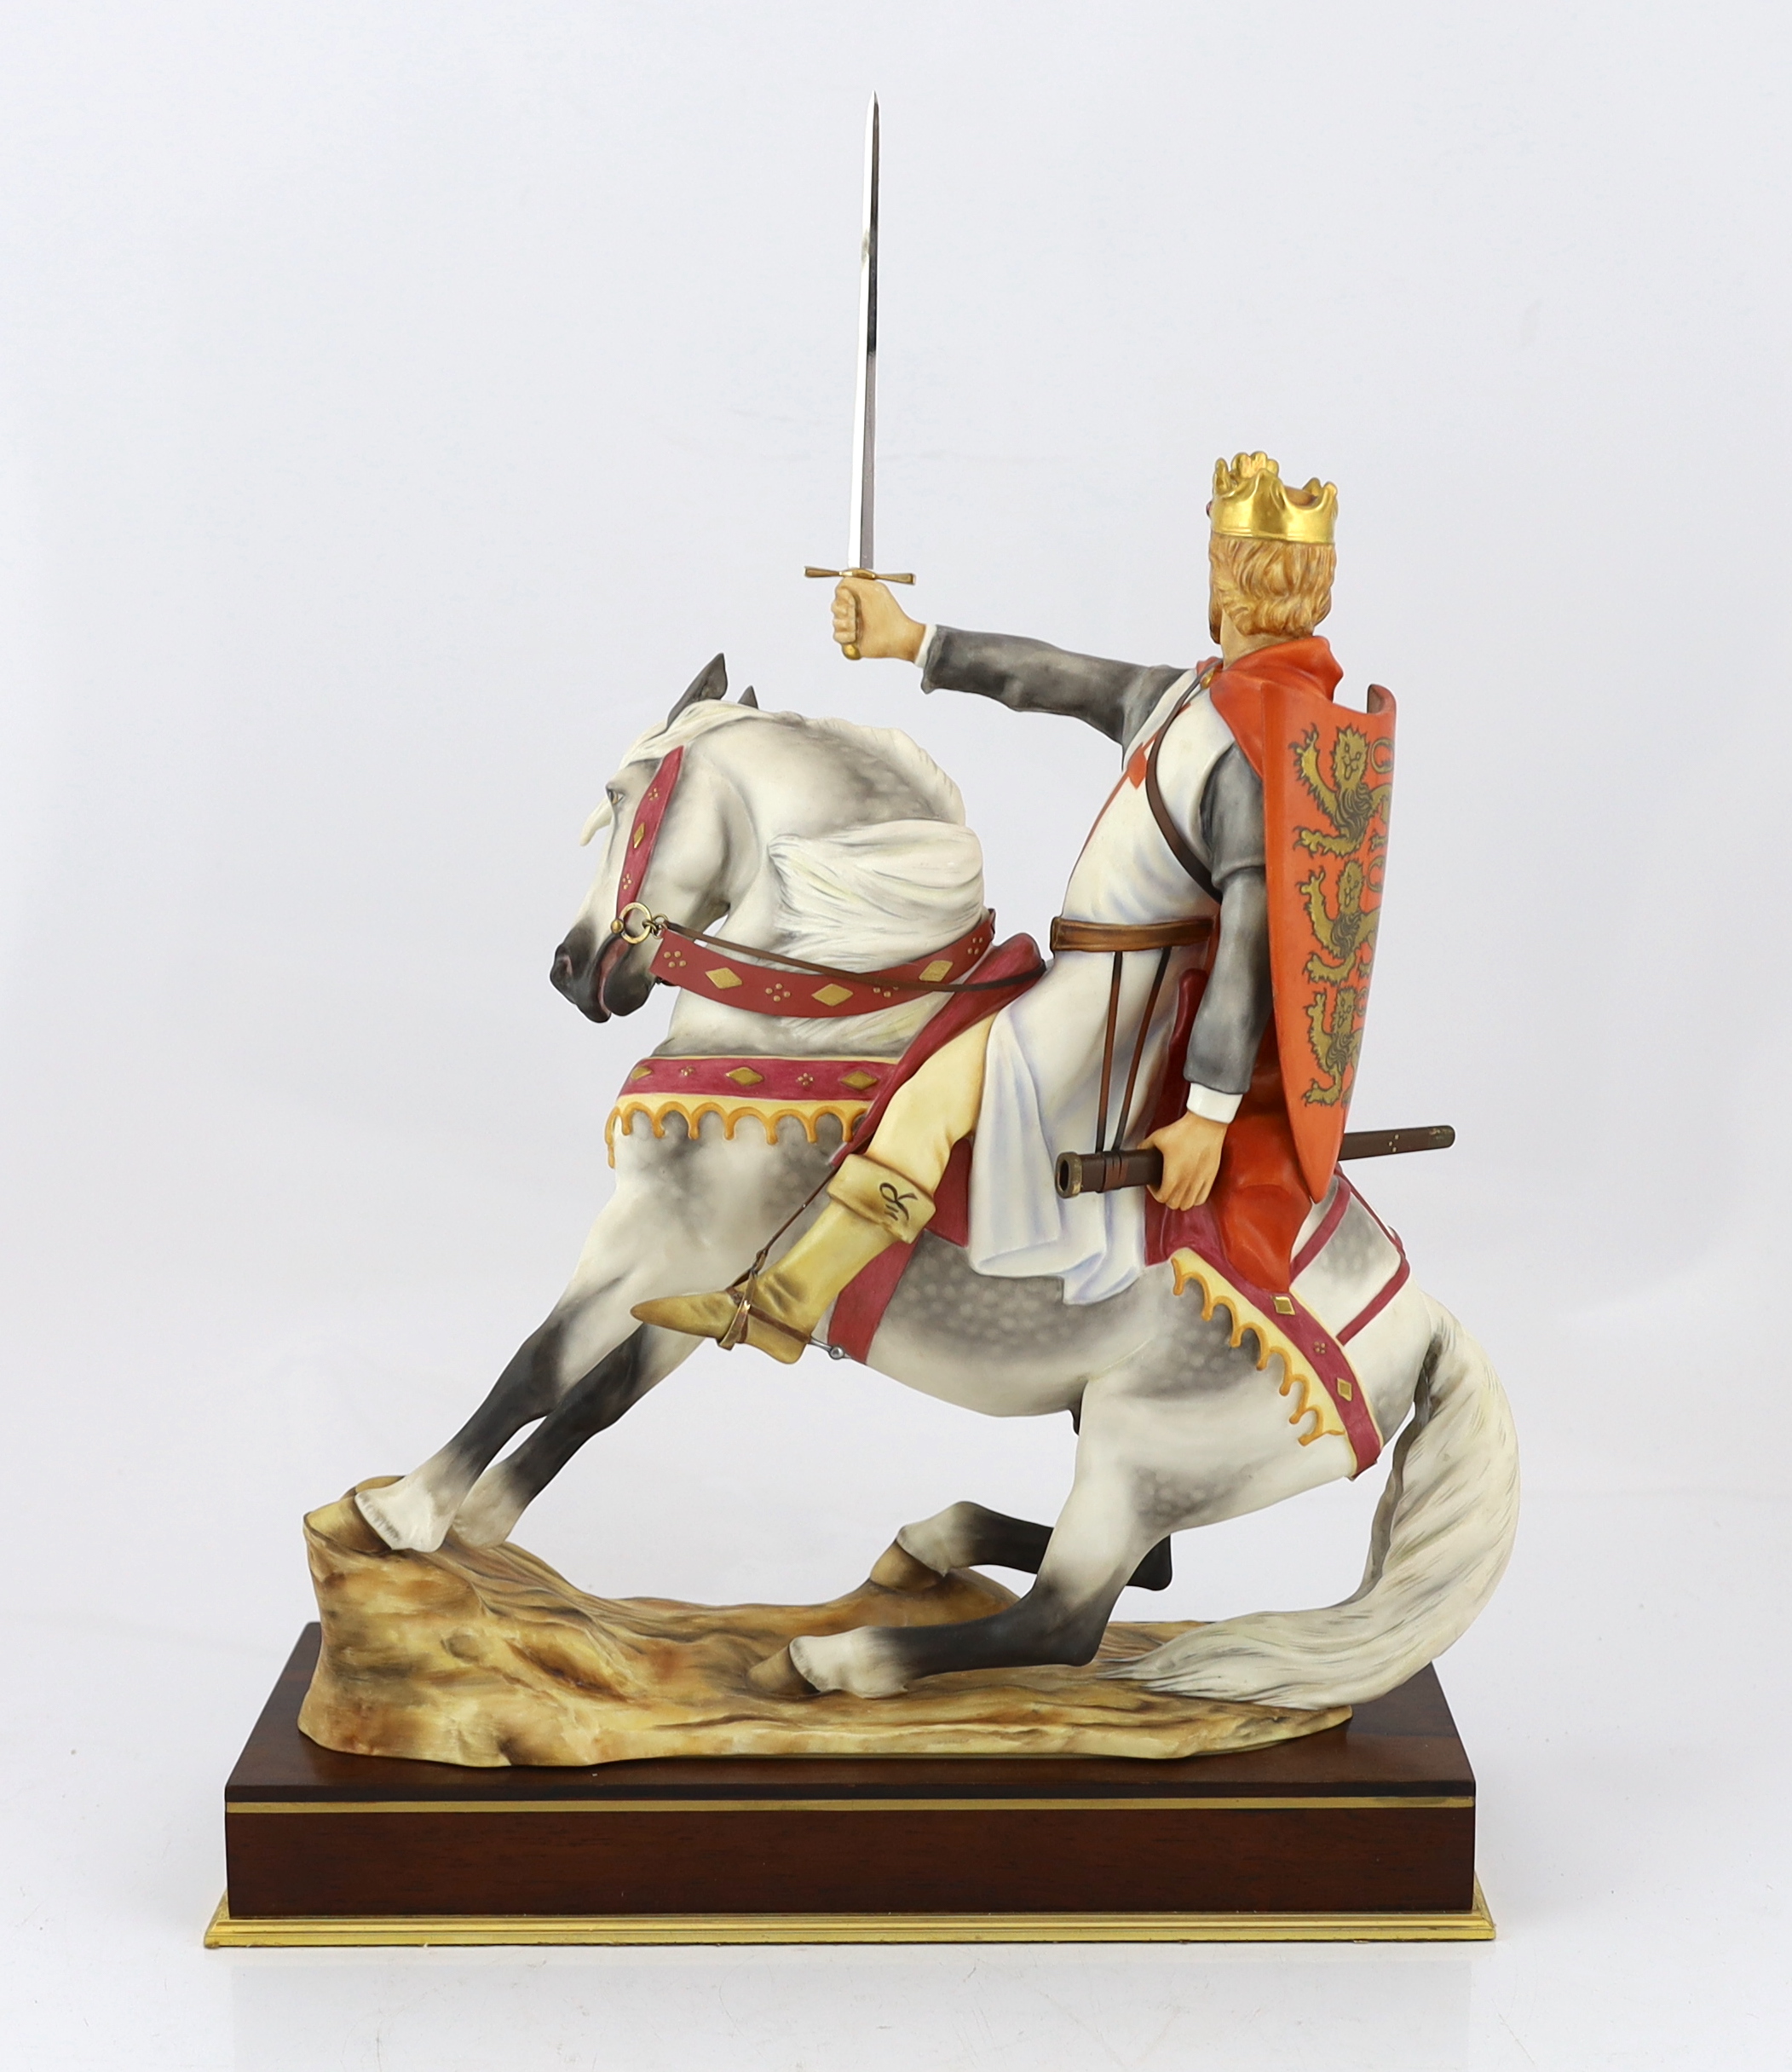 Bernard Winskill (d.1980), a Royal Worcester porcelain equestrian group of Richard Coeur de Lion